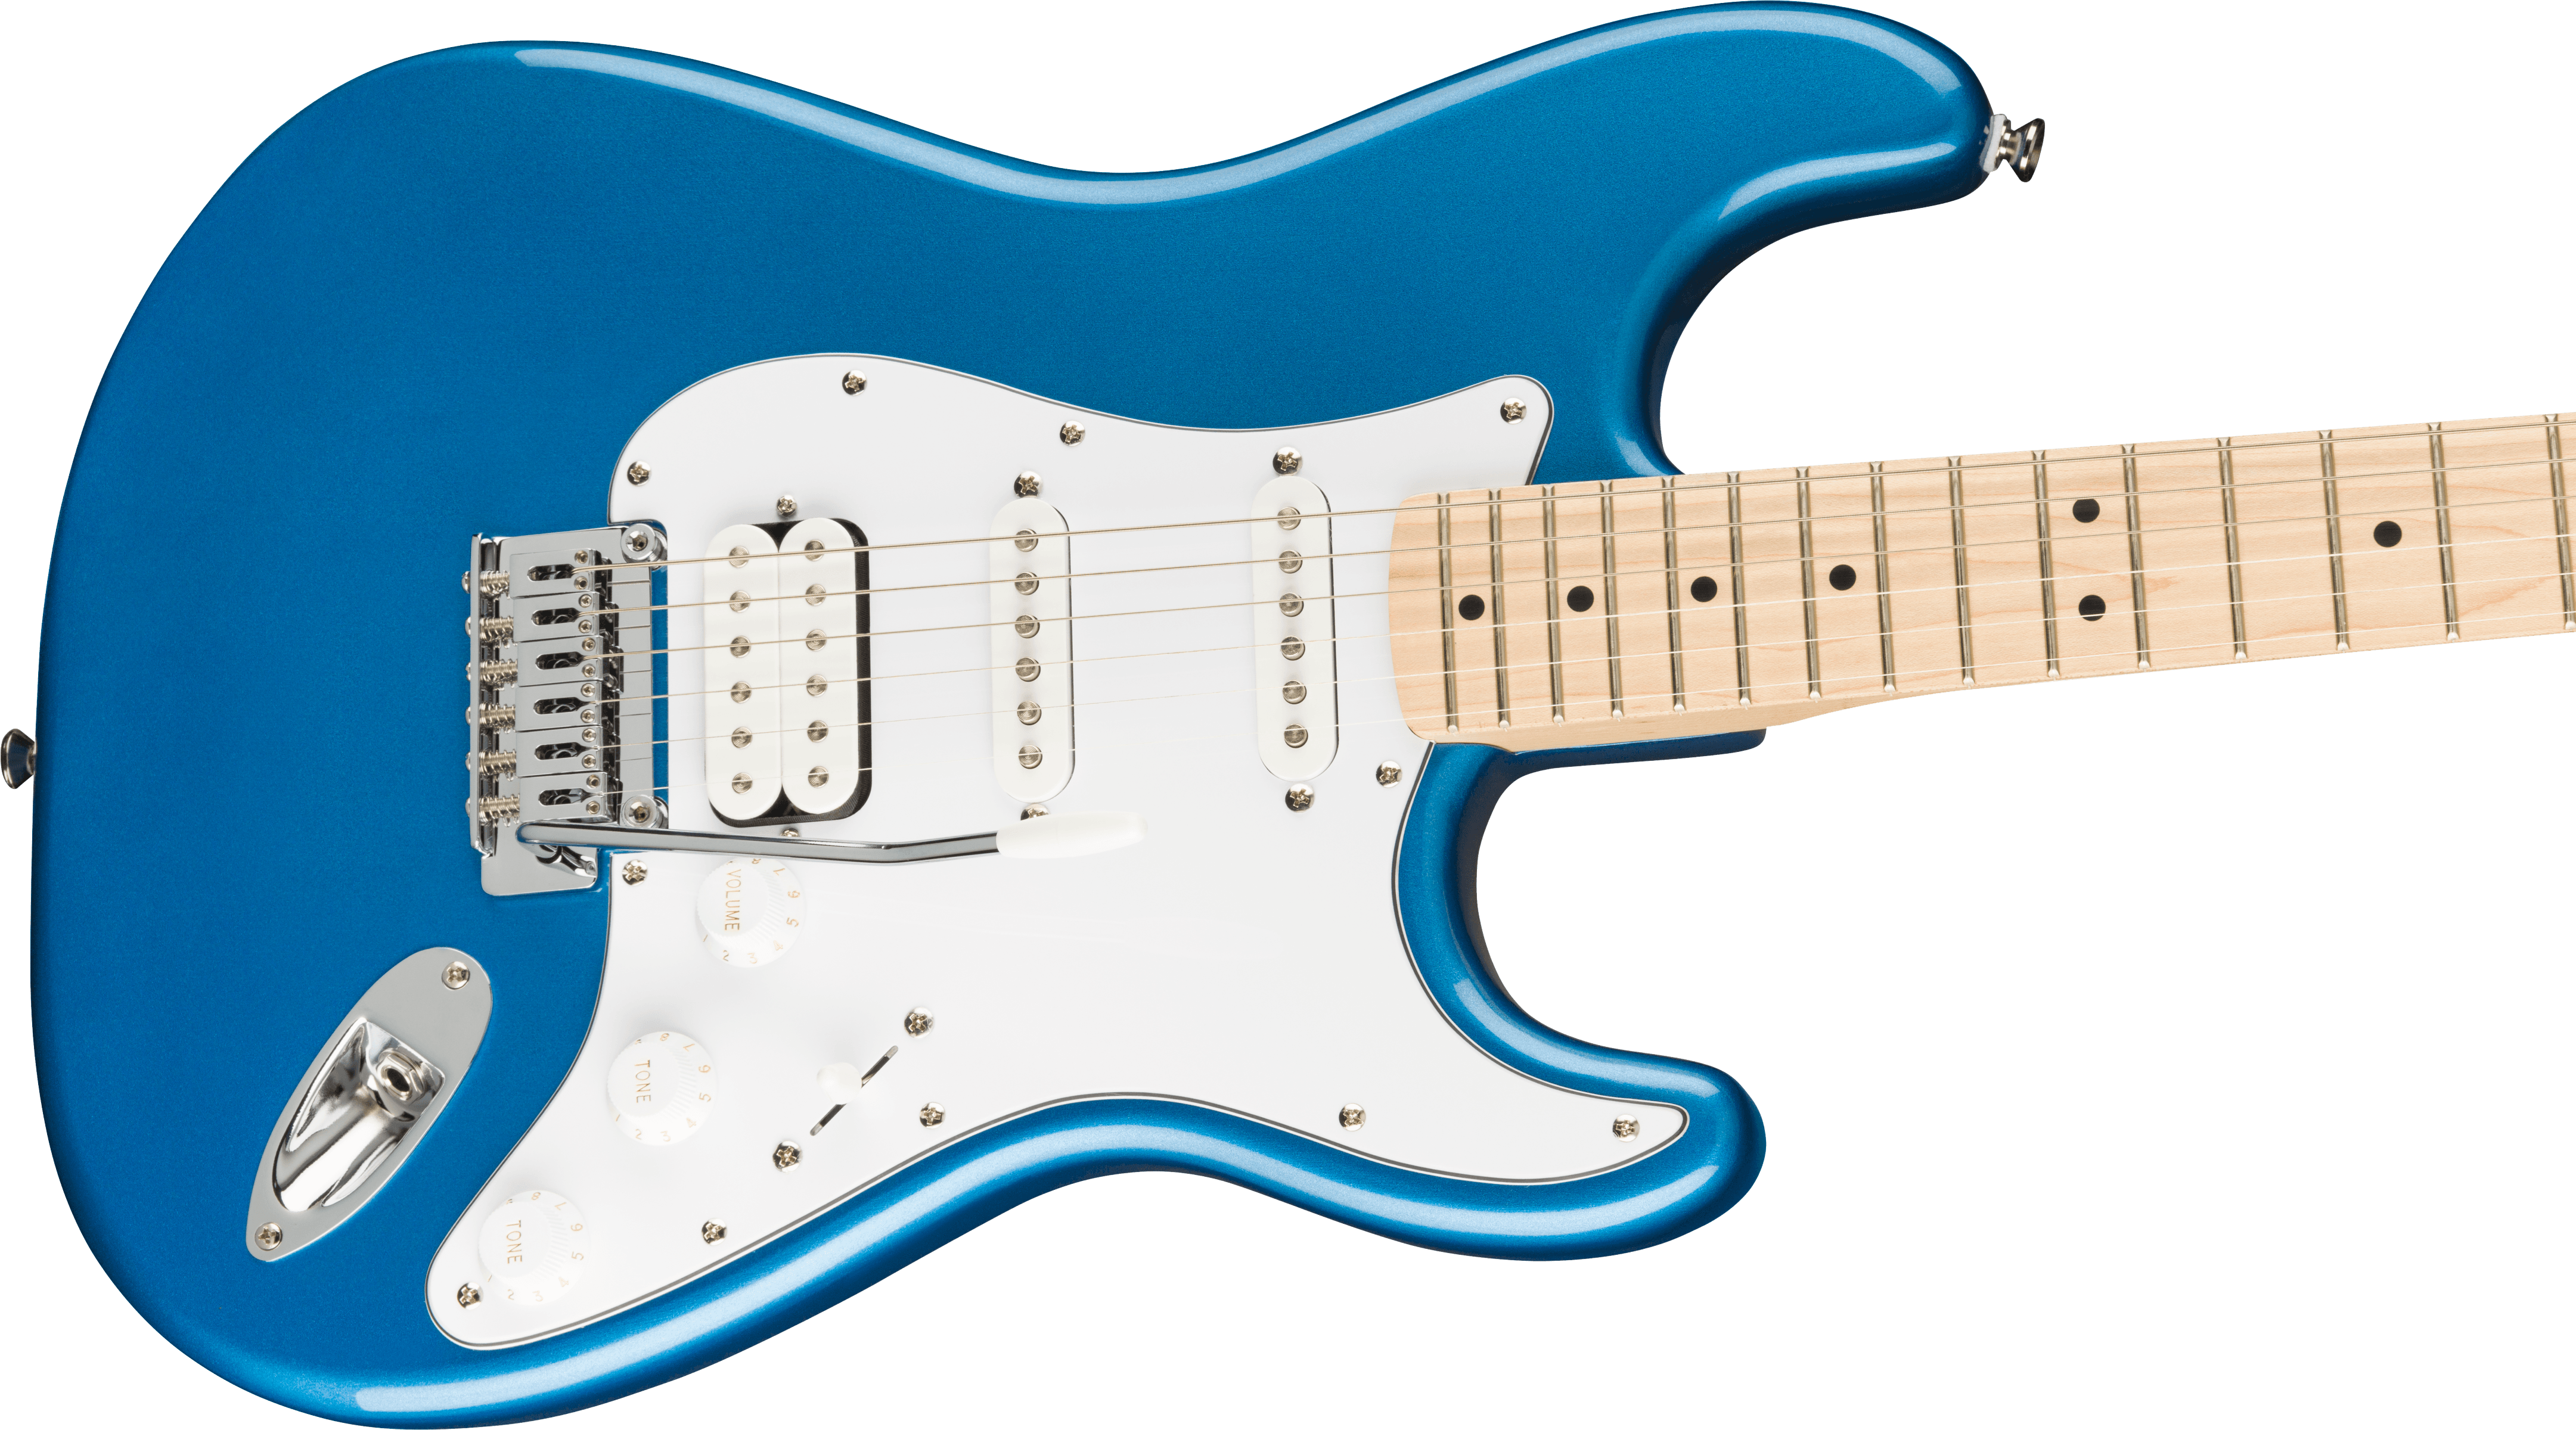 Squier Strat Affinity Hss Pack +fender Frontman 15g 2021 Trem Mn - Lake Placid Blue - E-Gitarre Set - Variation 3